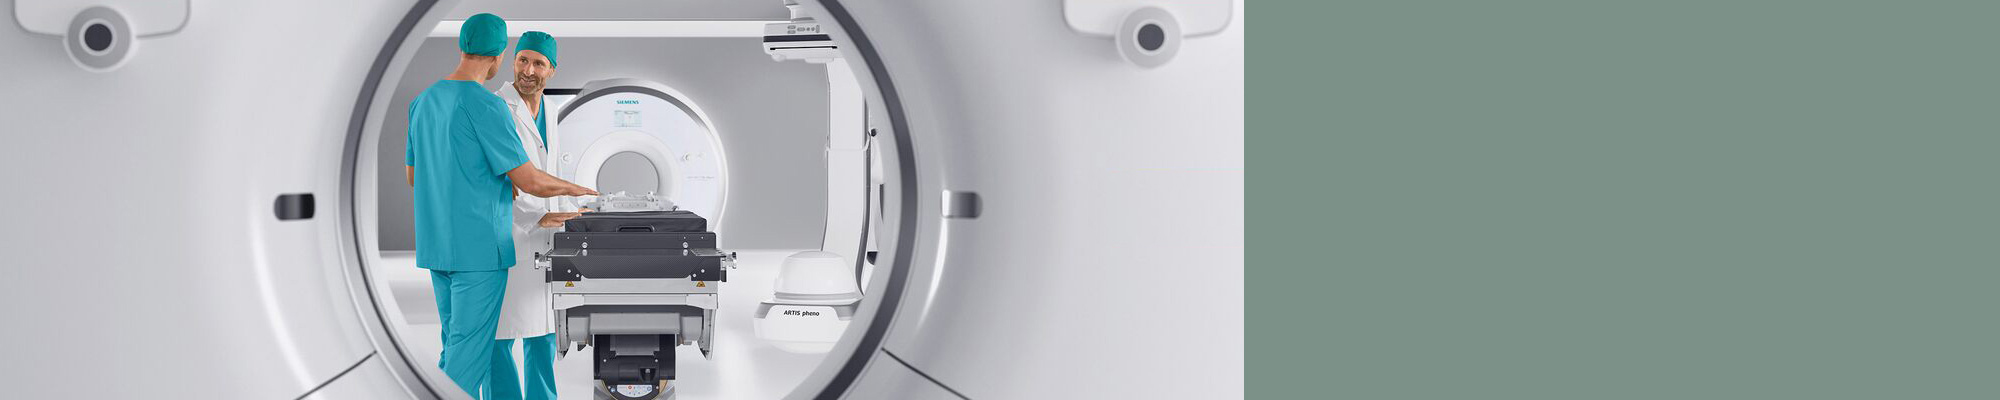 máquina de tomografia computadorizada de alta tecnologia